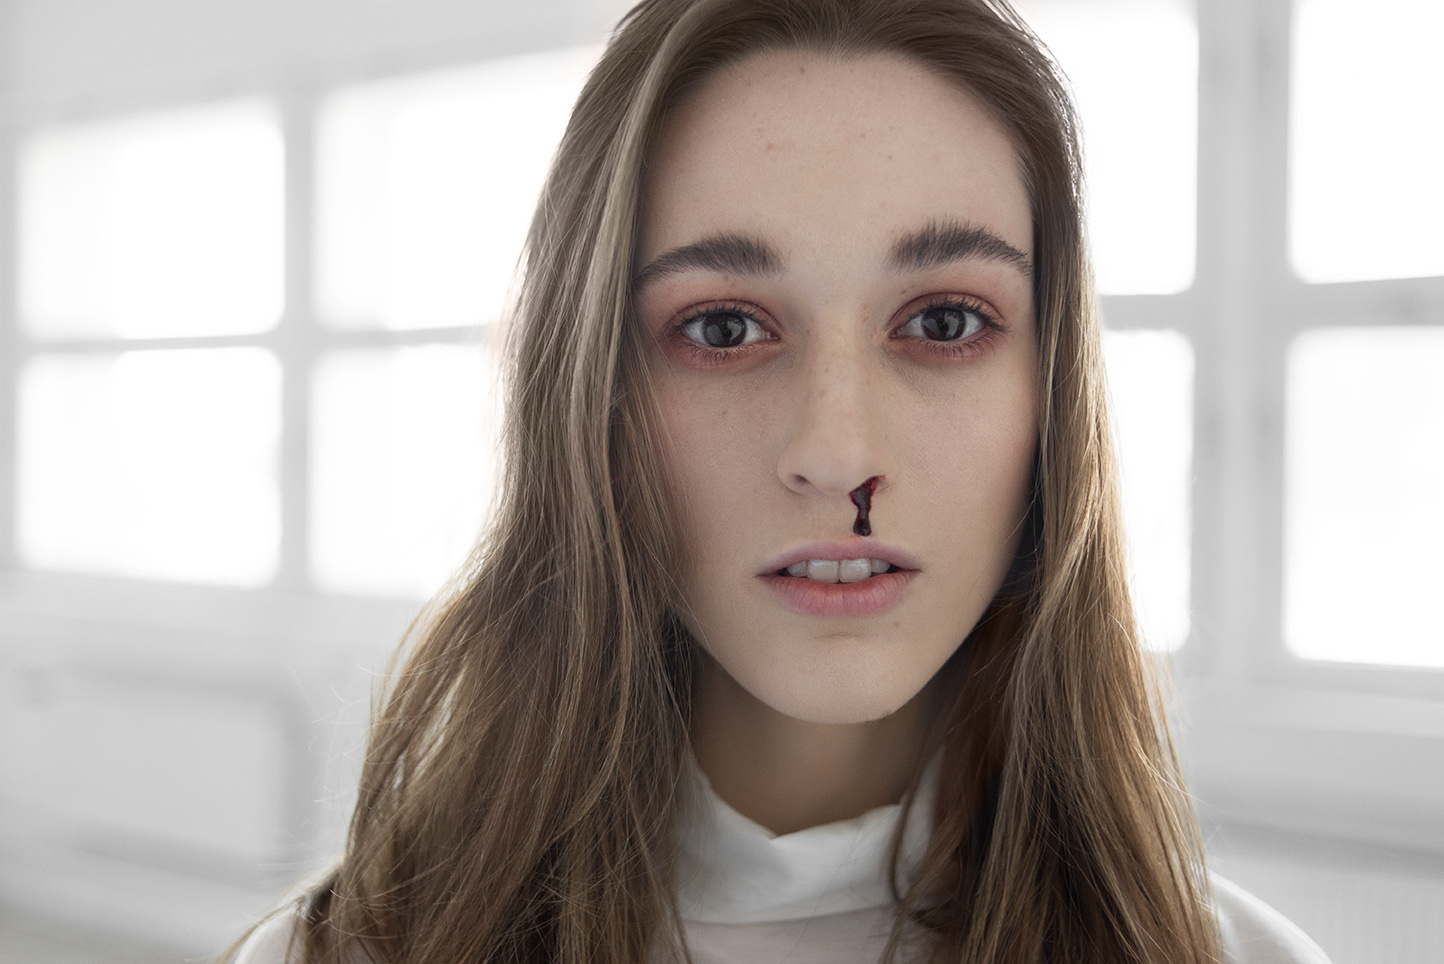 Portret dziewczyny z podkrążonymi oczami i krwią z nosa